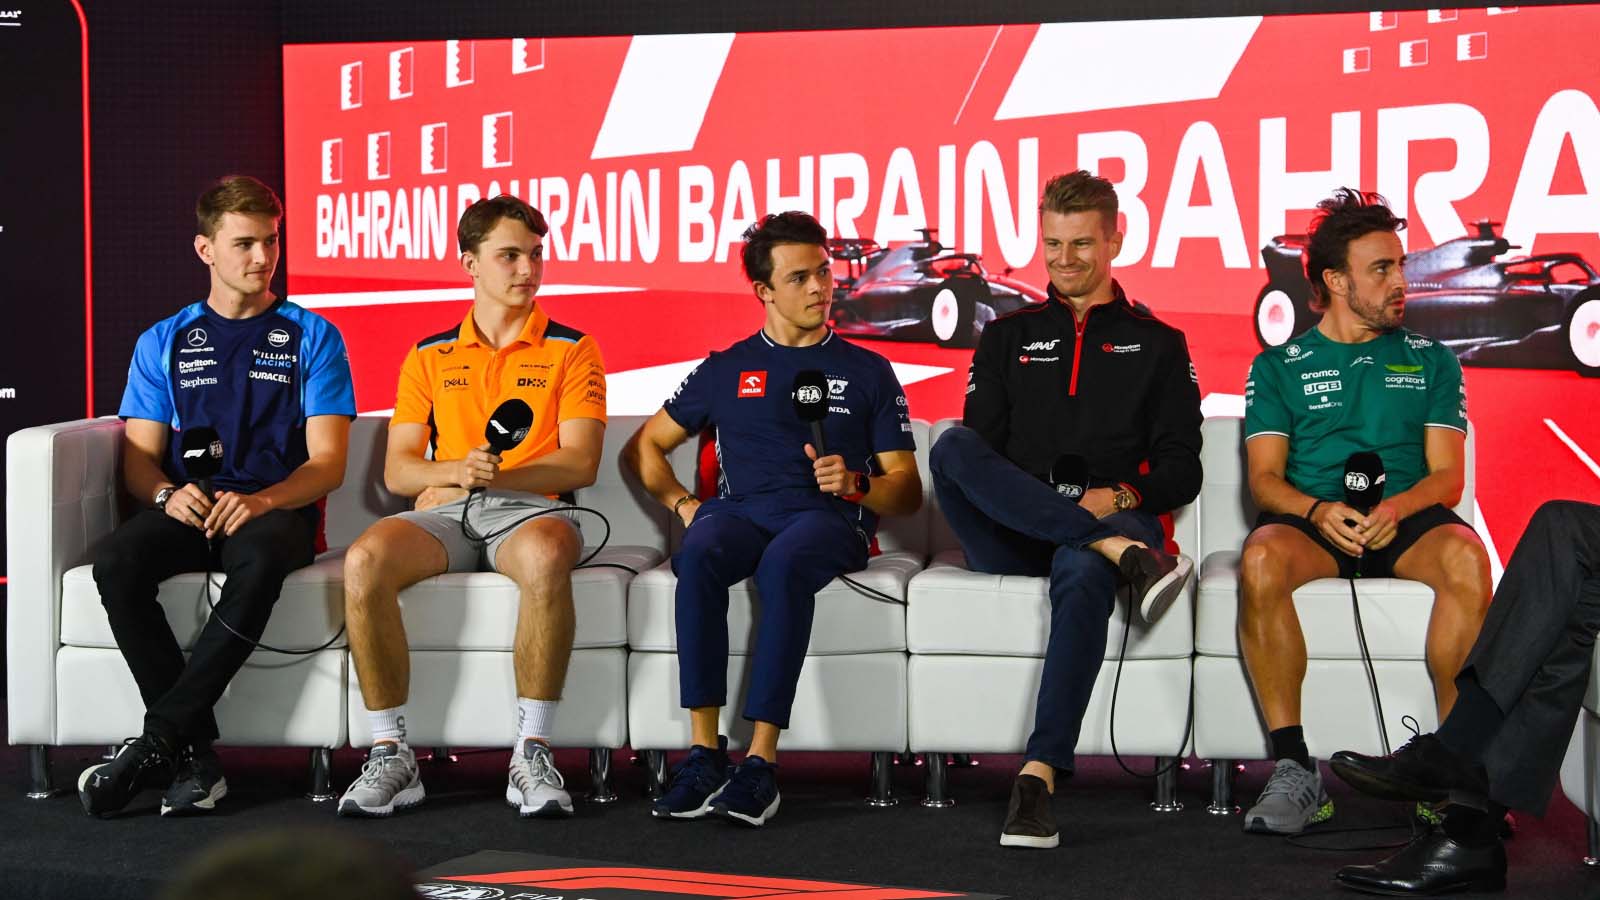 Bahrain Grand Prix press conference. March 2023.